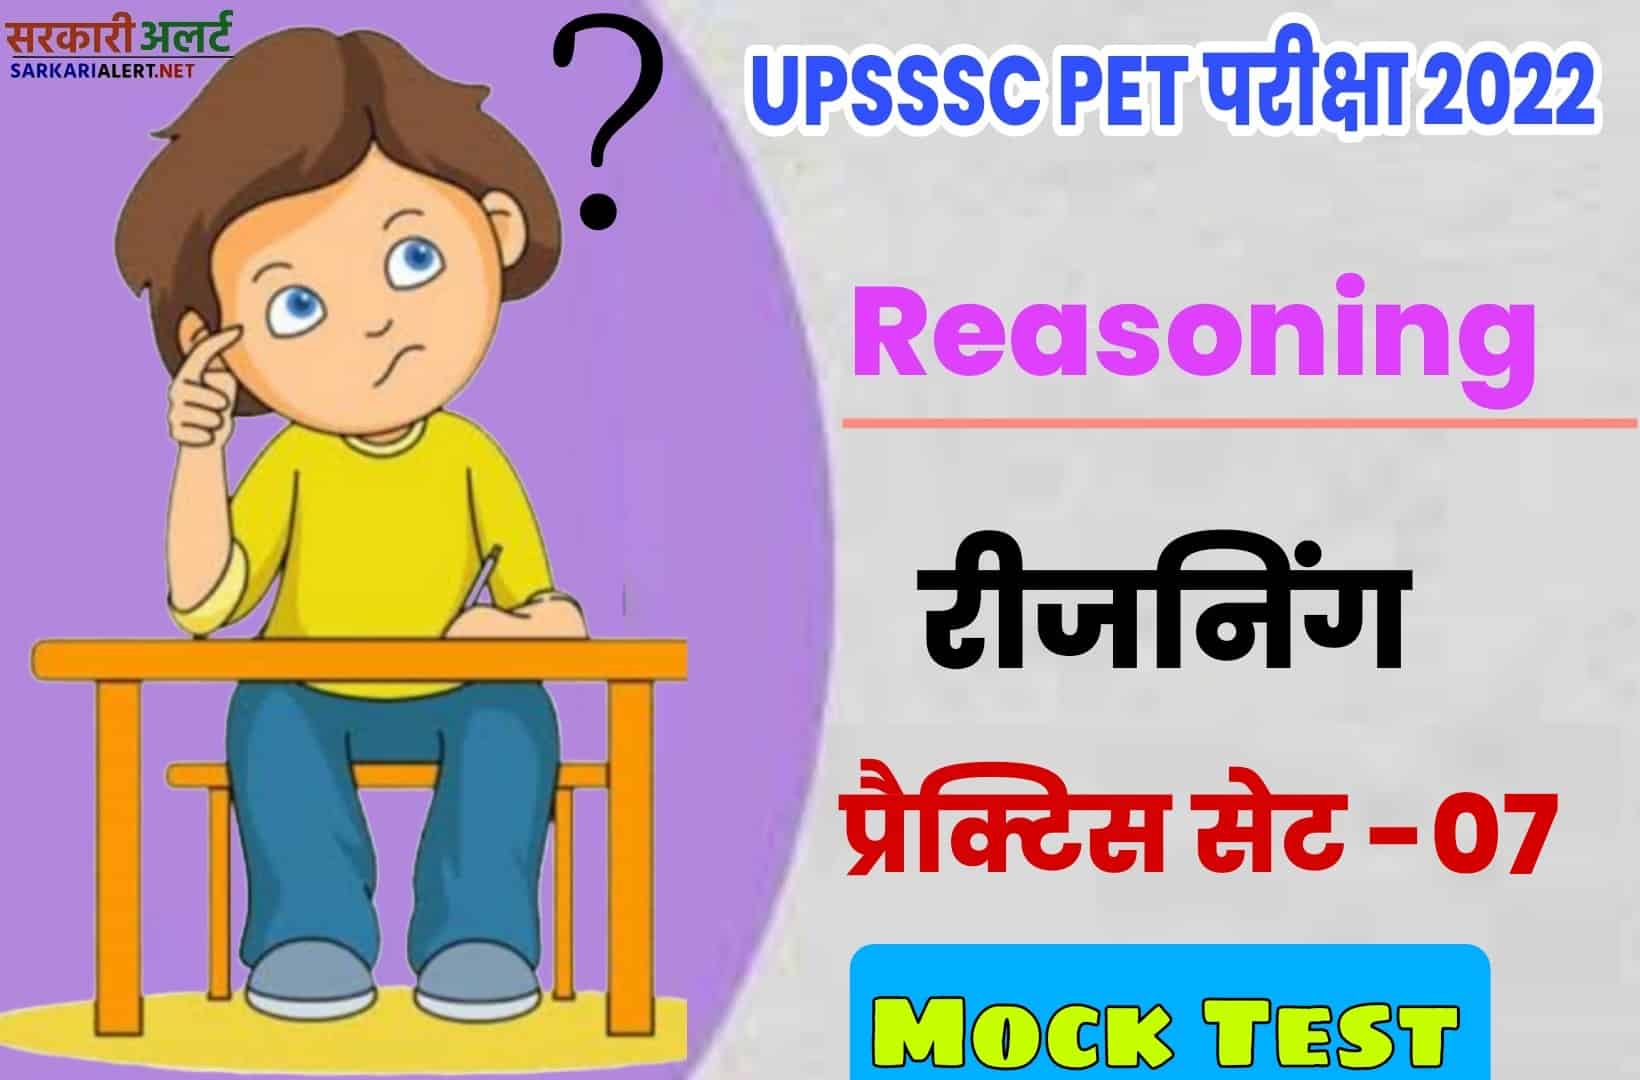 UPSSSC PET Reasoning Practice Set 07 | परीक्षा से पहले एक नजर जरूर पढ़ें मुख्य प्रश्नों संग्रह